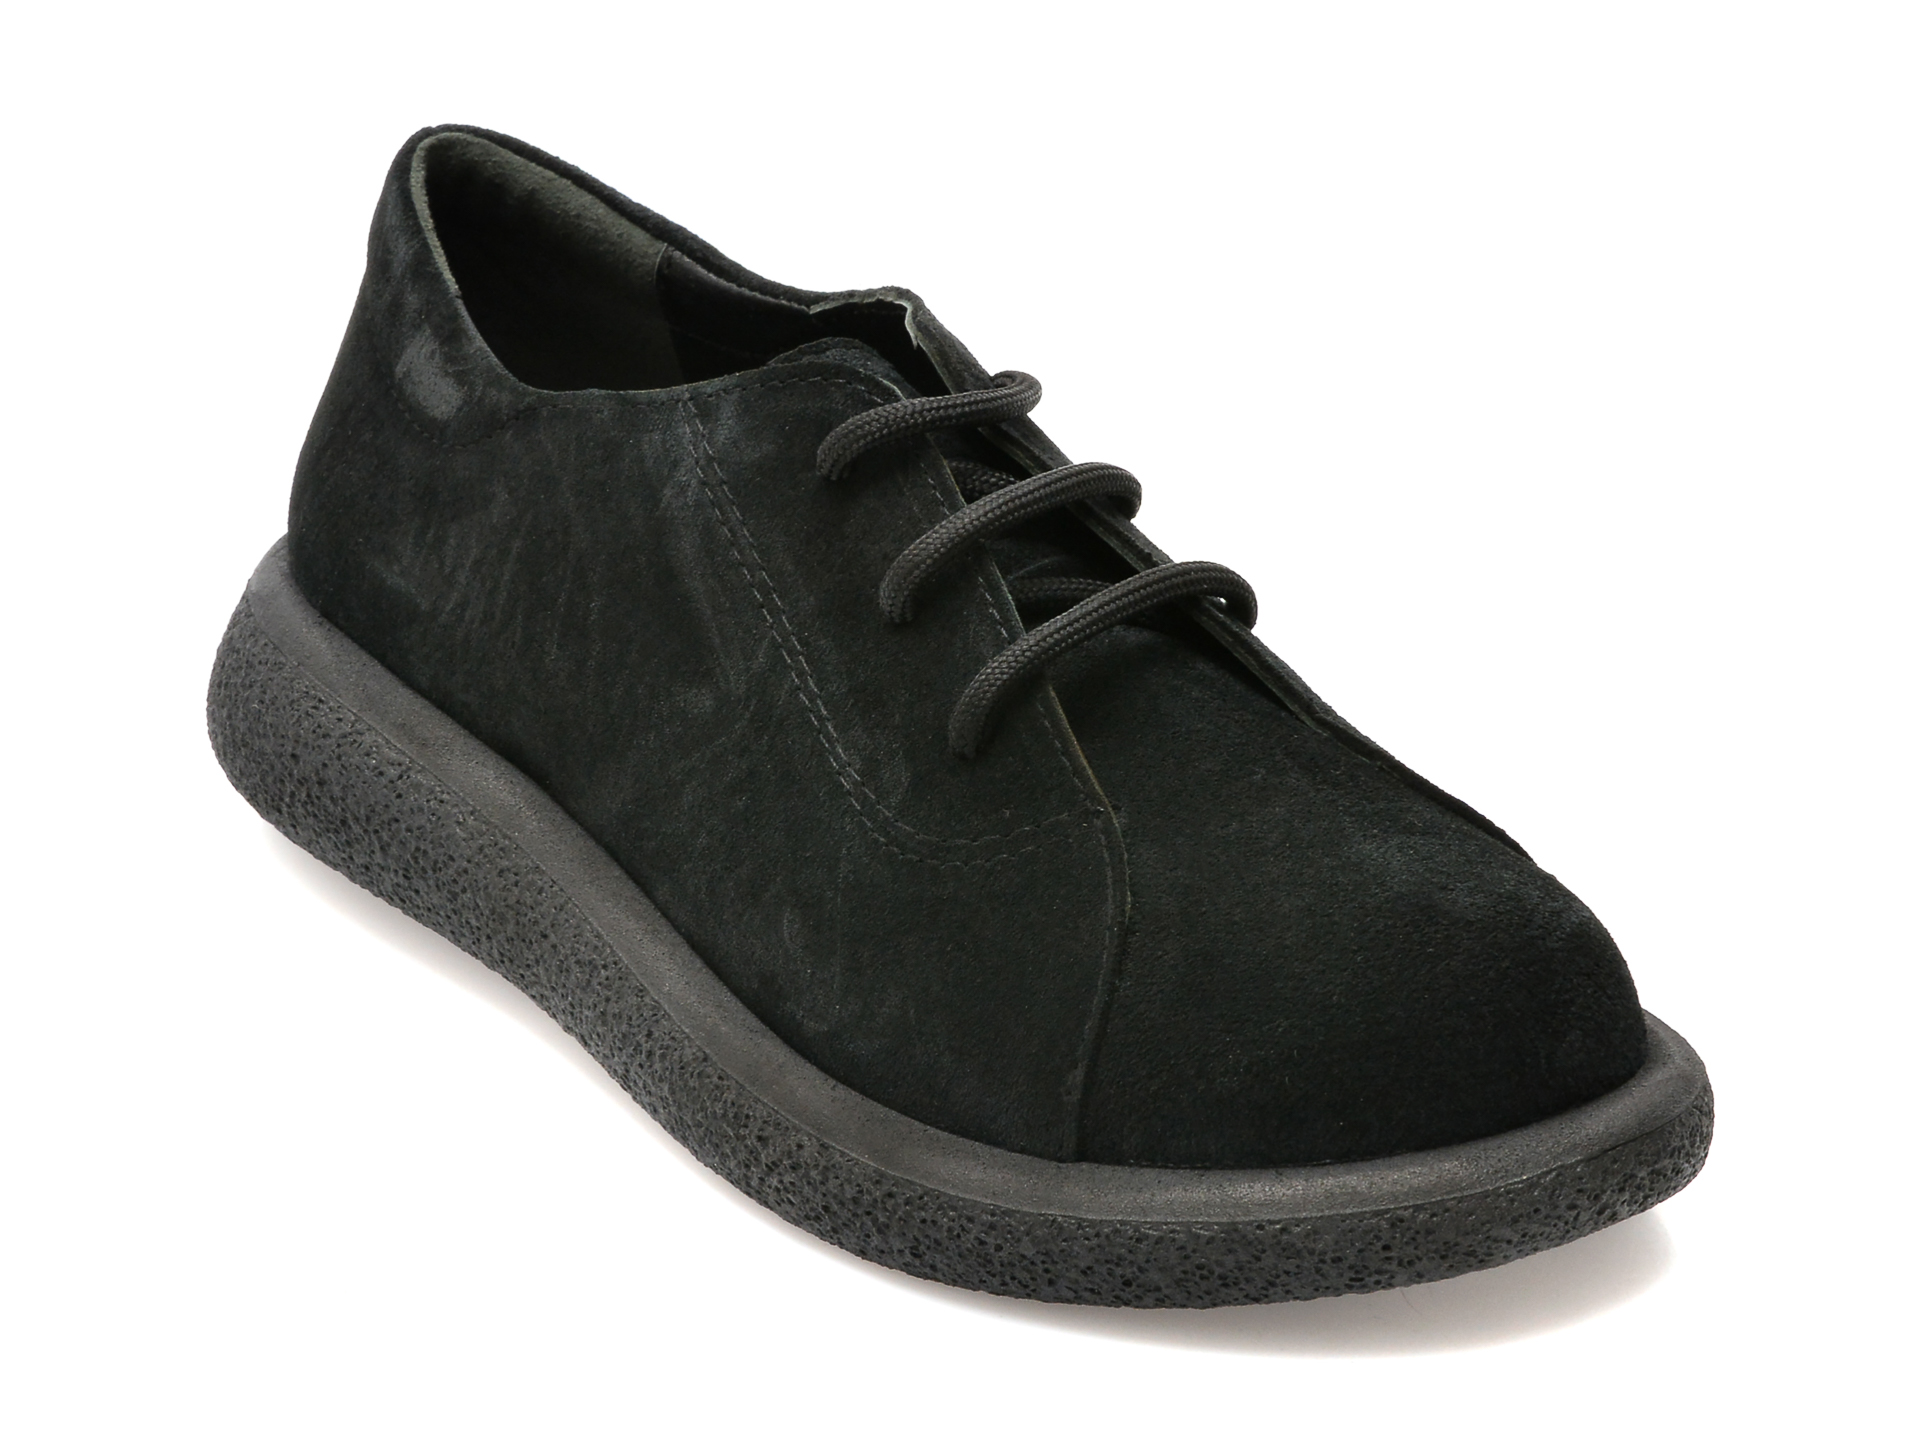 Pantofi FLAVIA PASSINI negri, 105, din piele intoarsa femei 2023-03-19